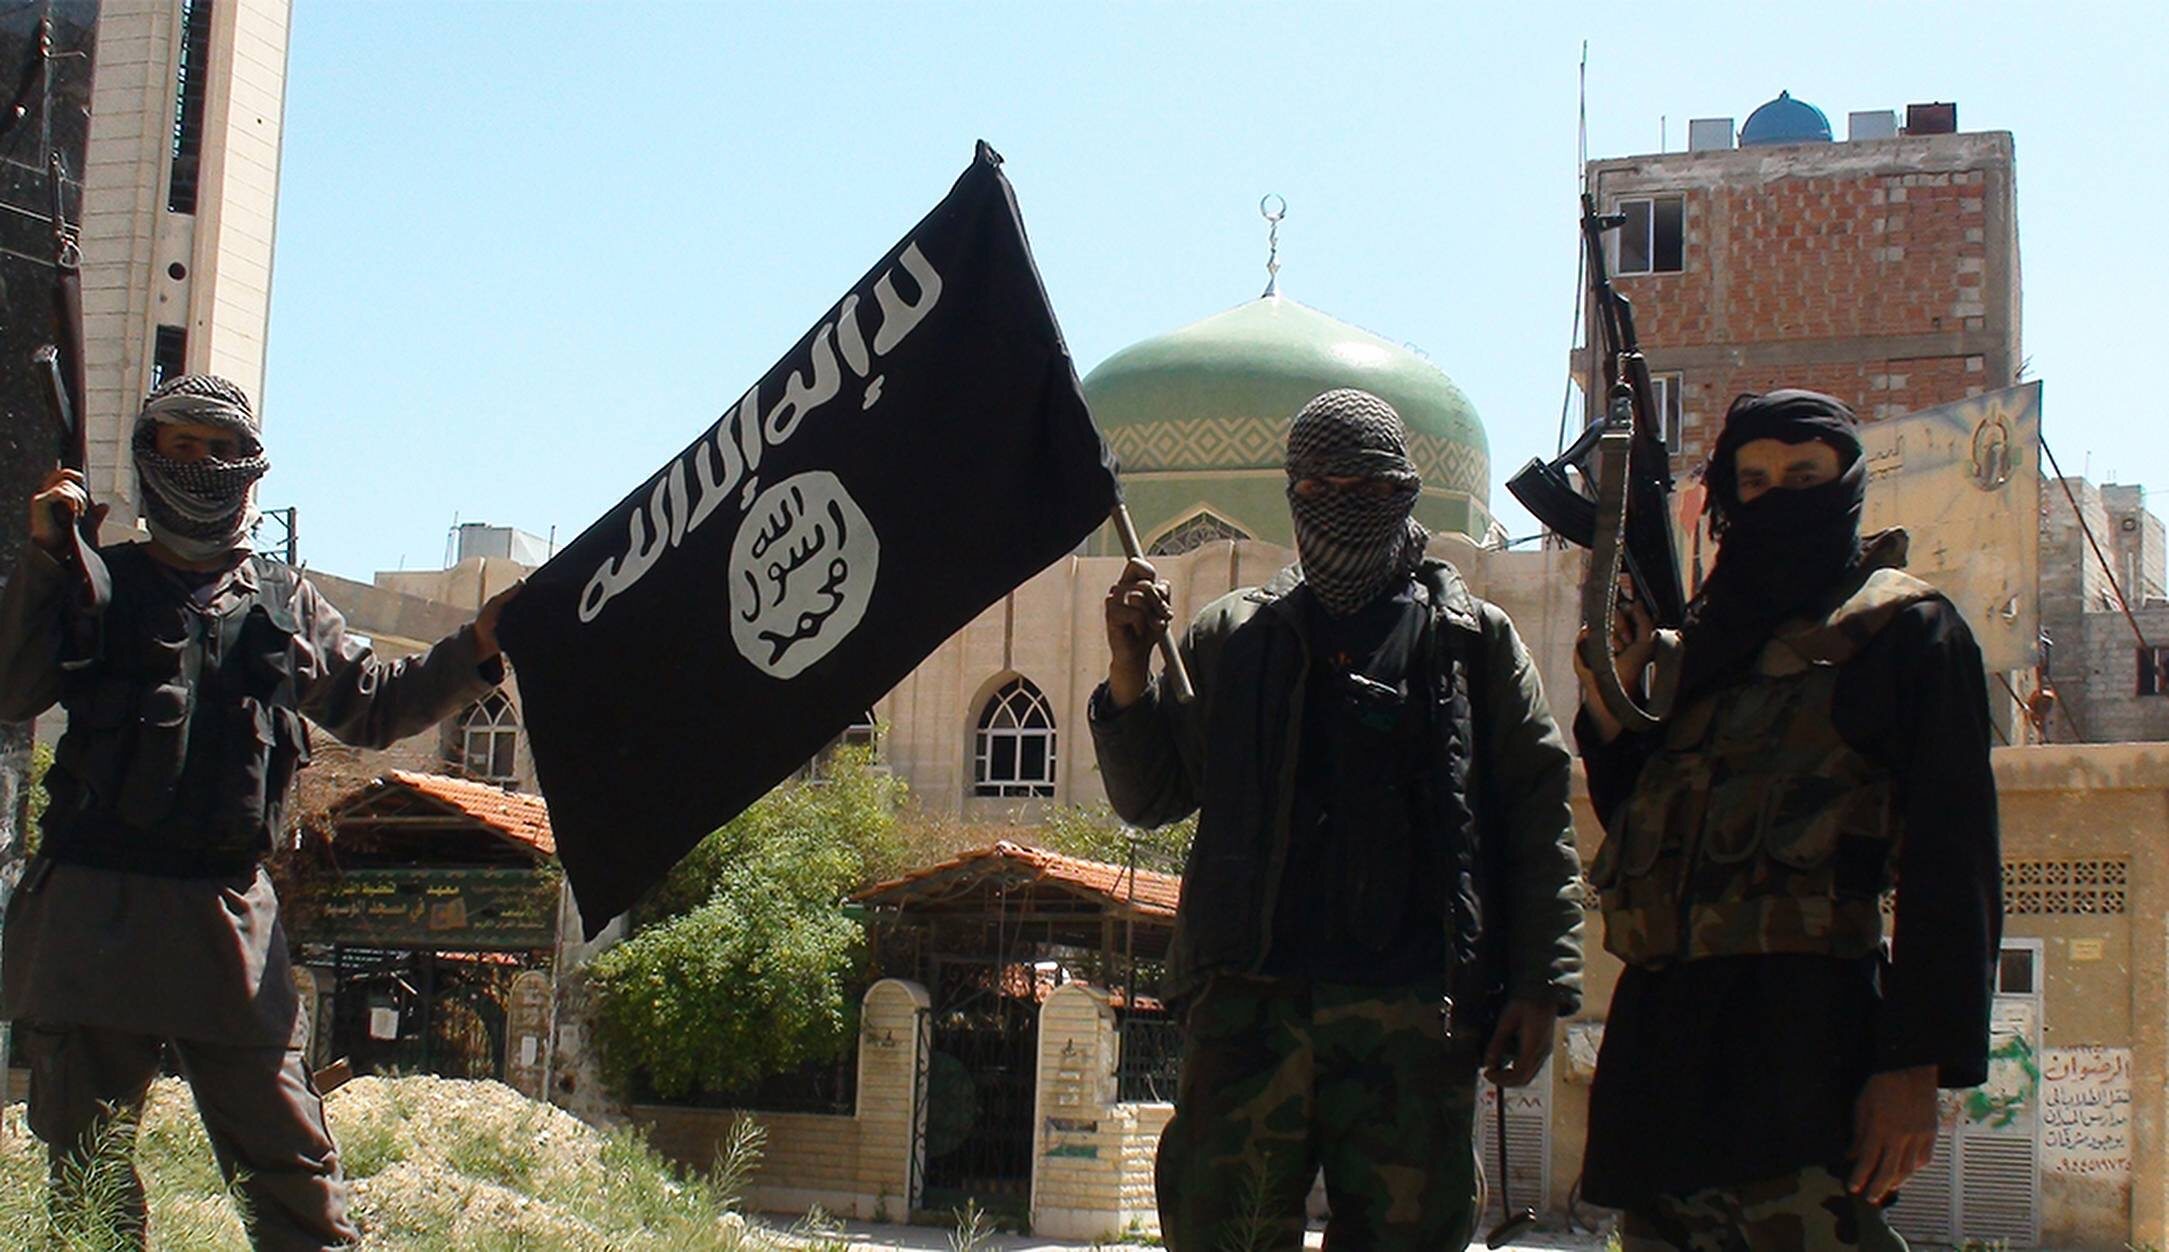 Игил по английски. Организация Аль-Каида джихад. Палестинский исламский джихад.